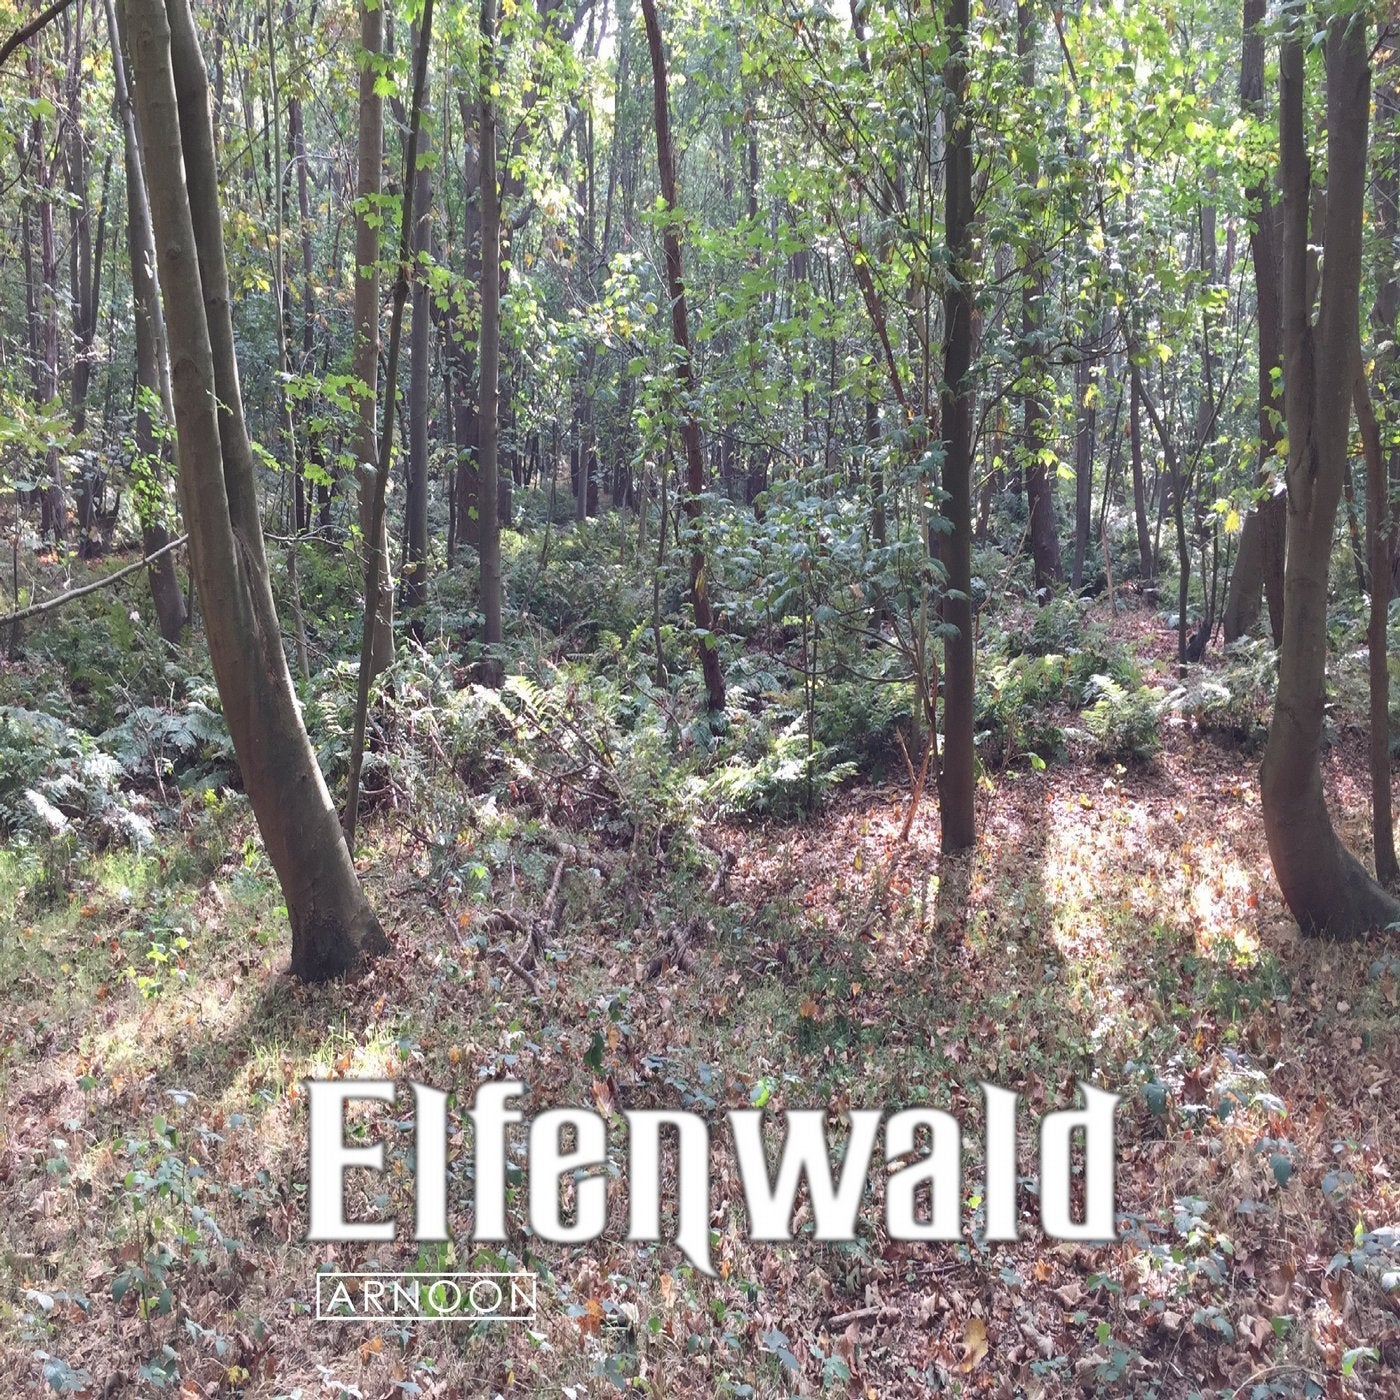 Elfenwald